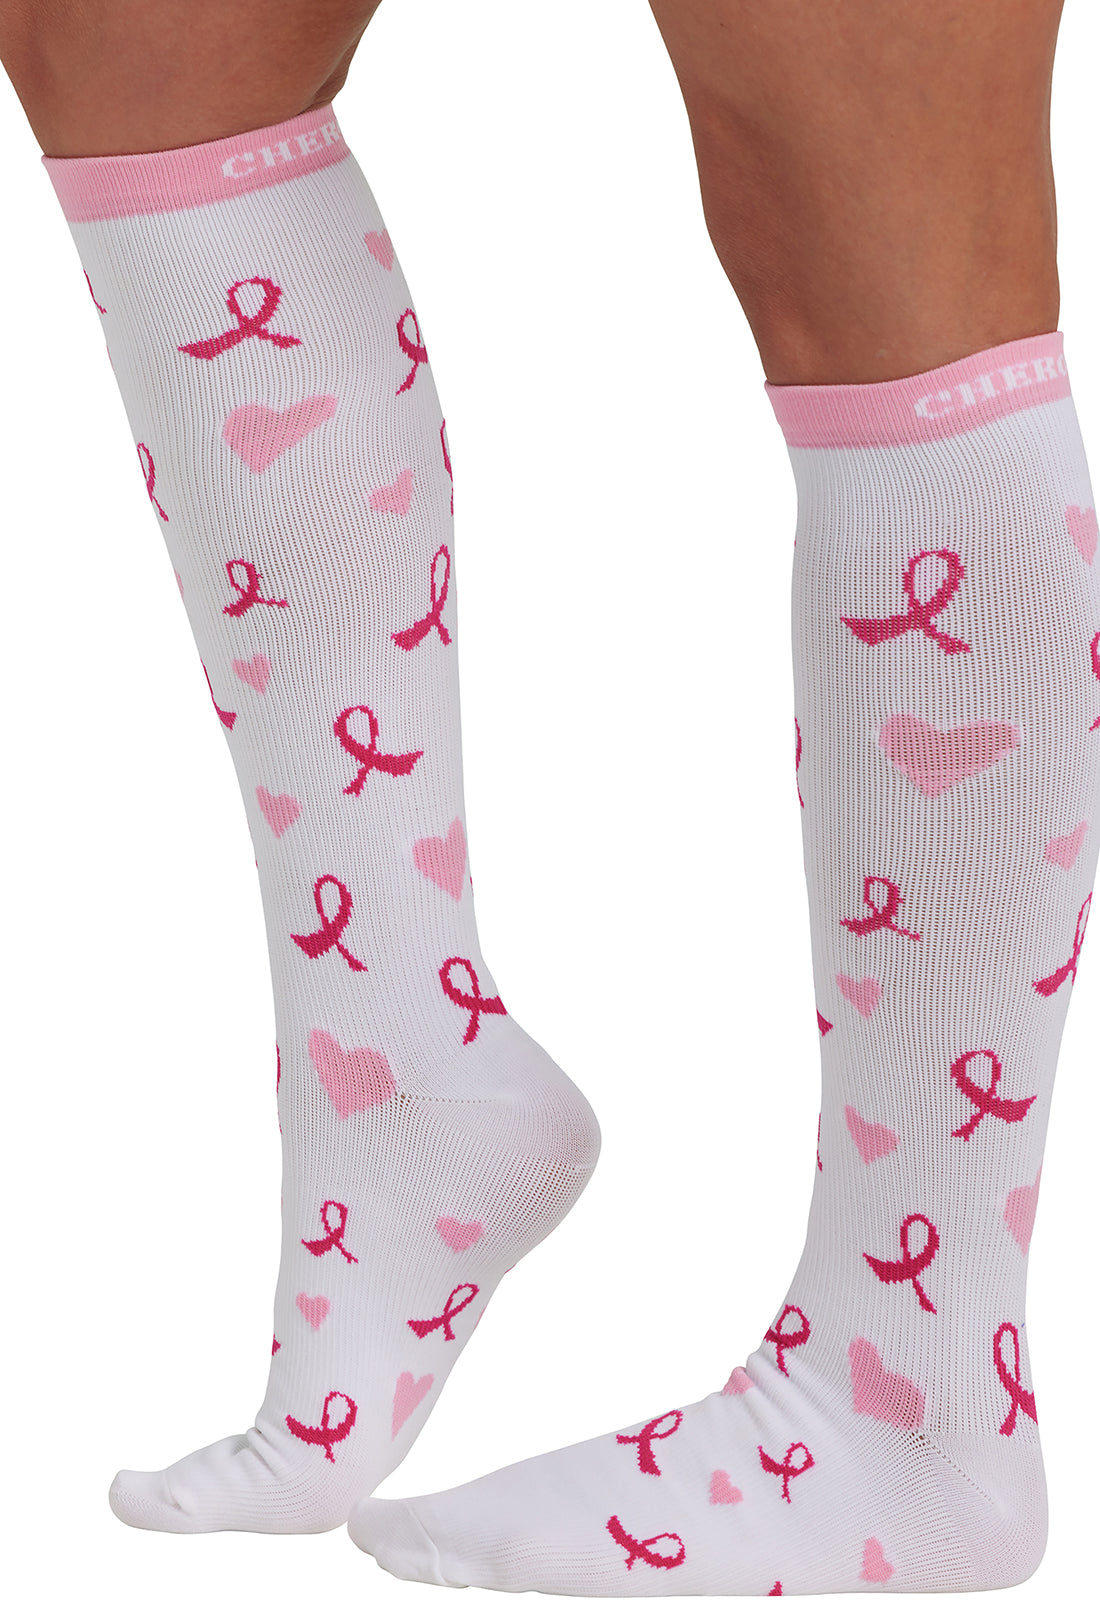 Regular Fit - Compression Socks 10-15mmHg Compression Socks Cherokee Legwear Heartfelt Ribbons  